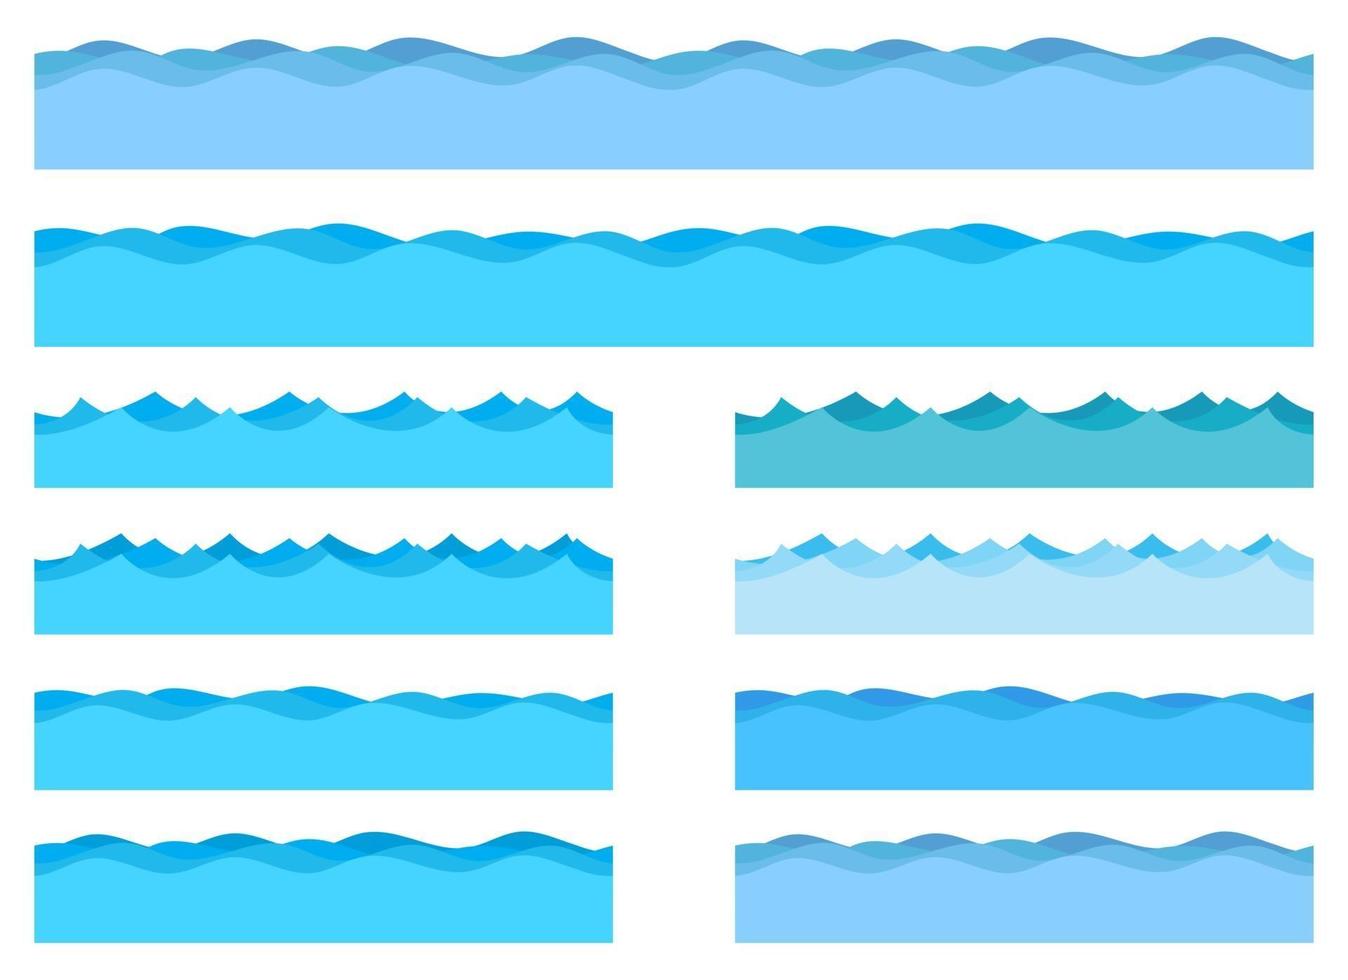 Meereswellenvektorentwurfsillustration lokalisiert auf weißem Hintergrund vektor